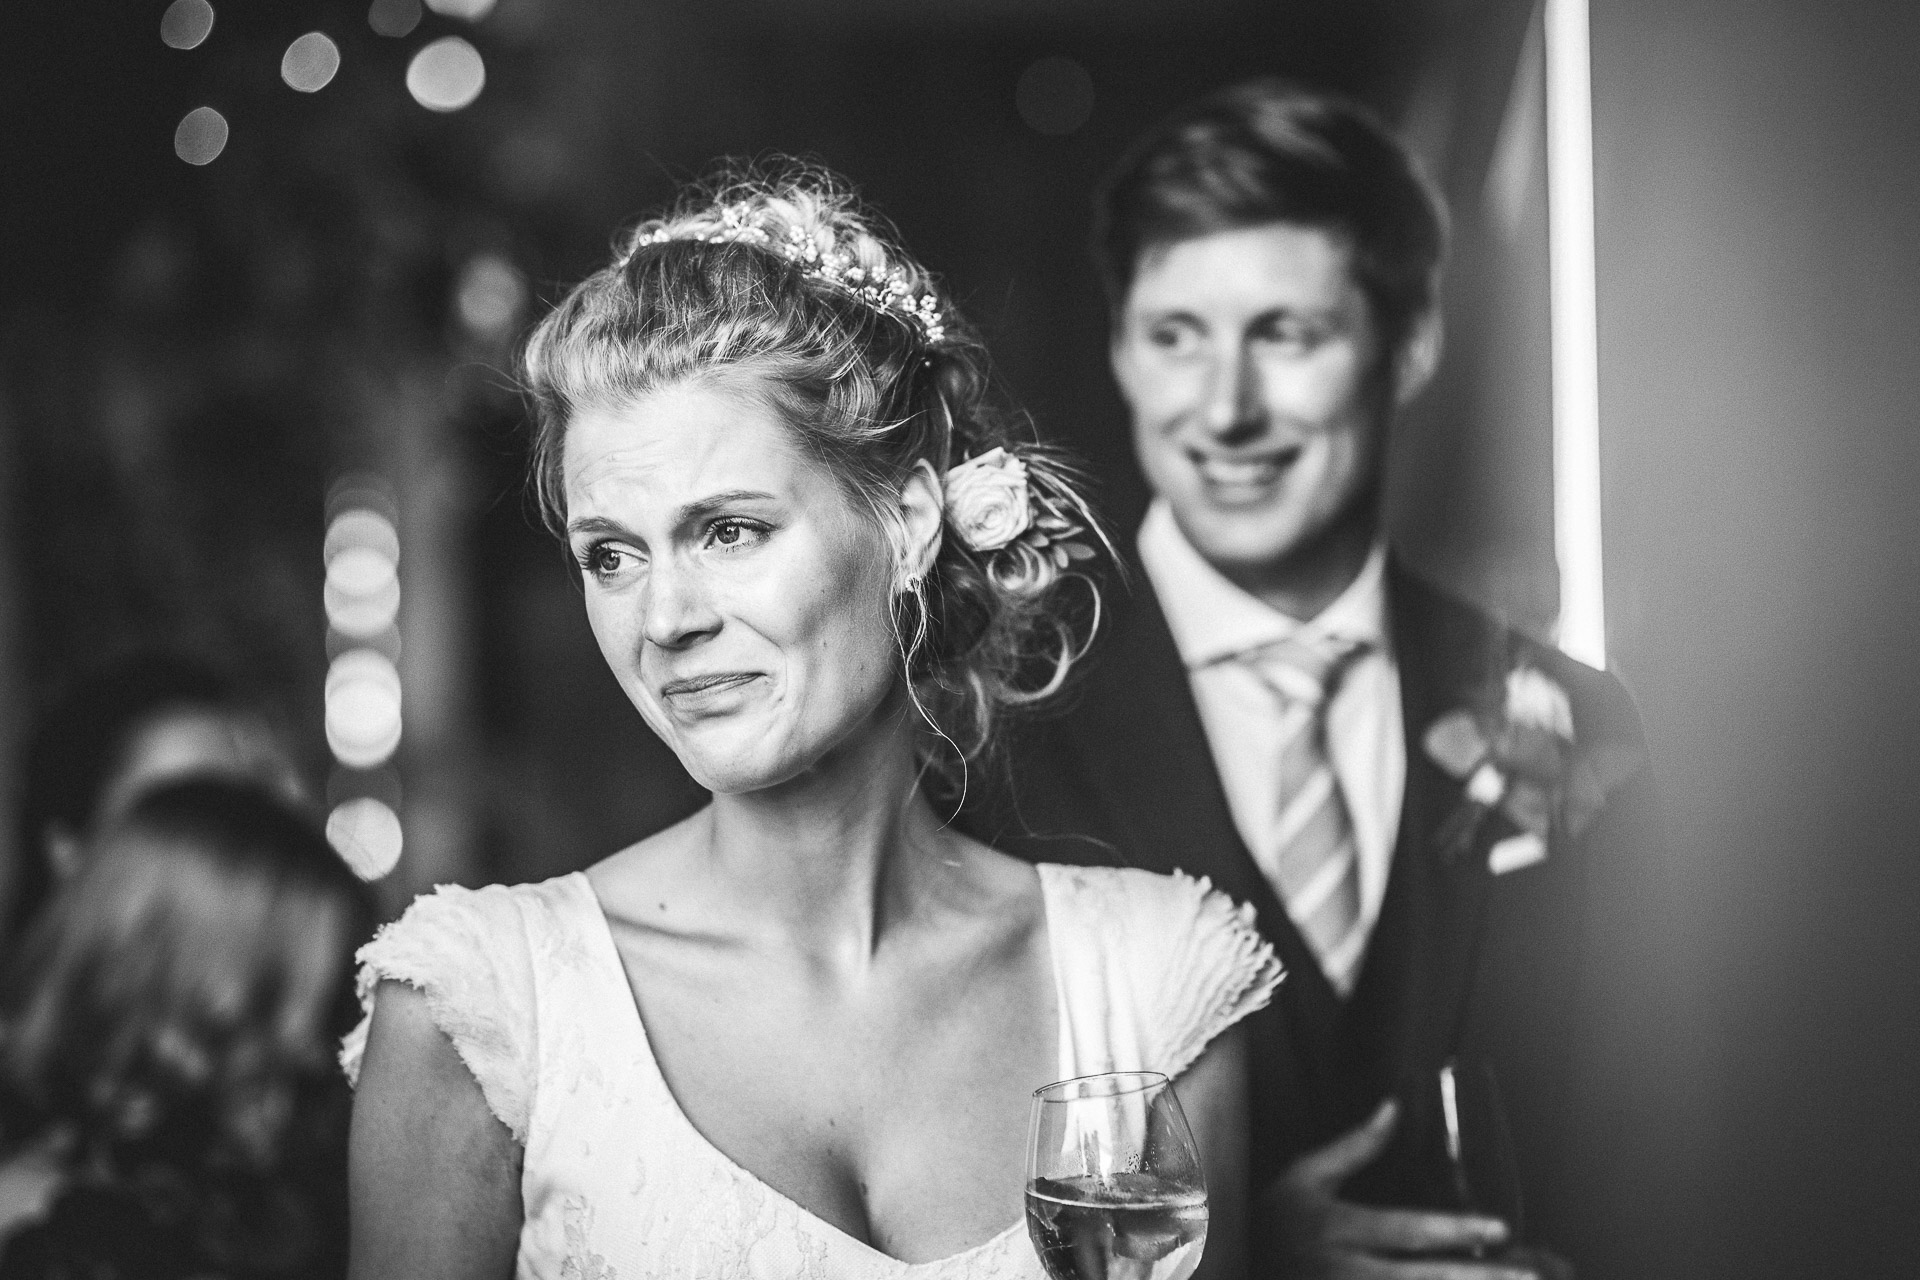 Emotionale Hochzeitsfotografie - echt, nah und unaufdringlich